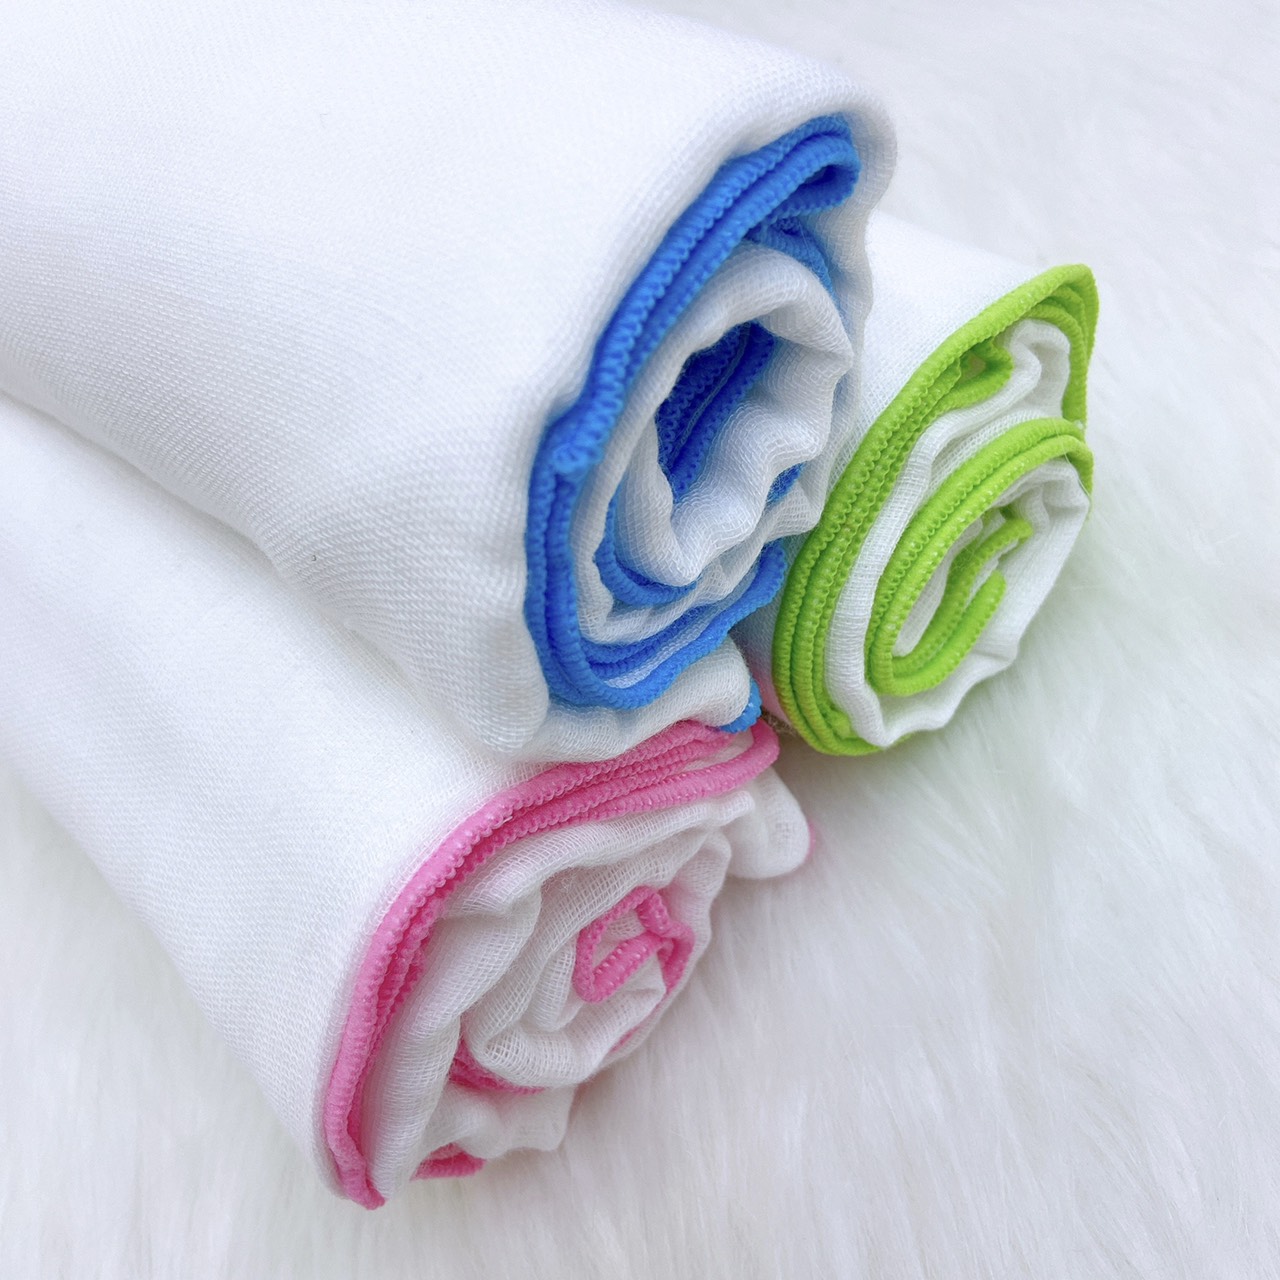 Hộp 2 khăn xô tắm Mipbi cotton cao cấp HM02 4 lớp/6 lớp kích thước 75x85cm